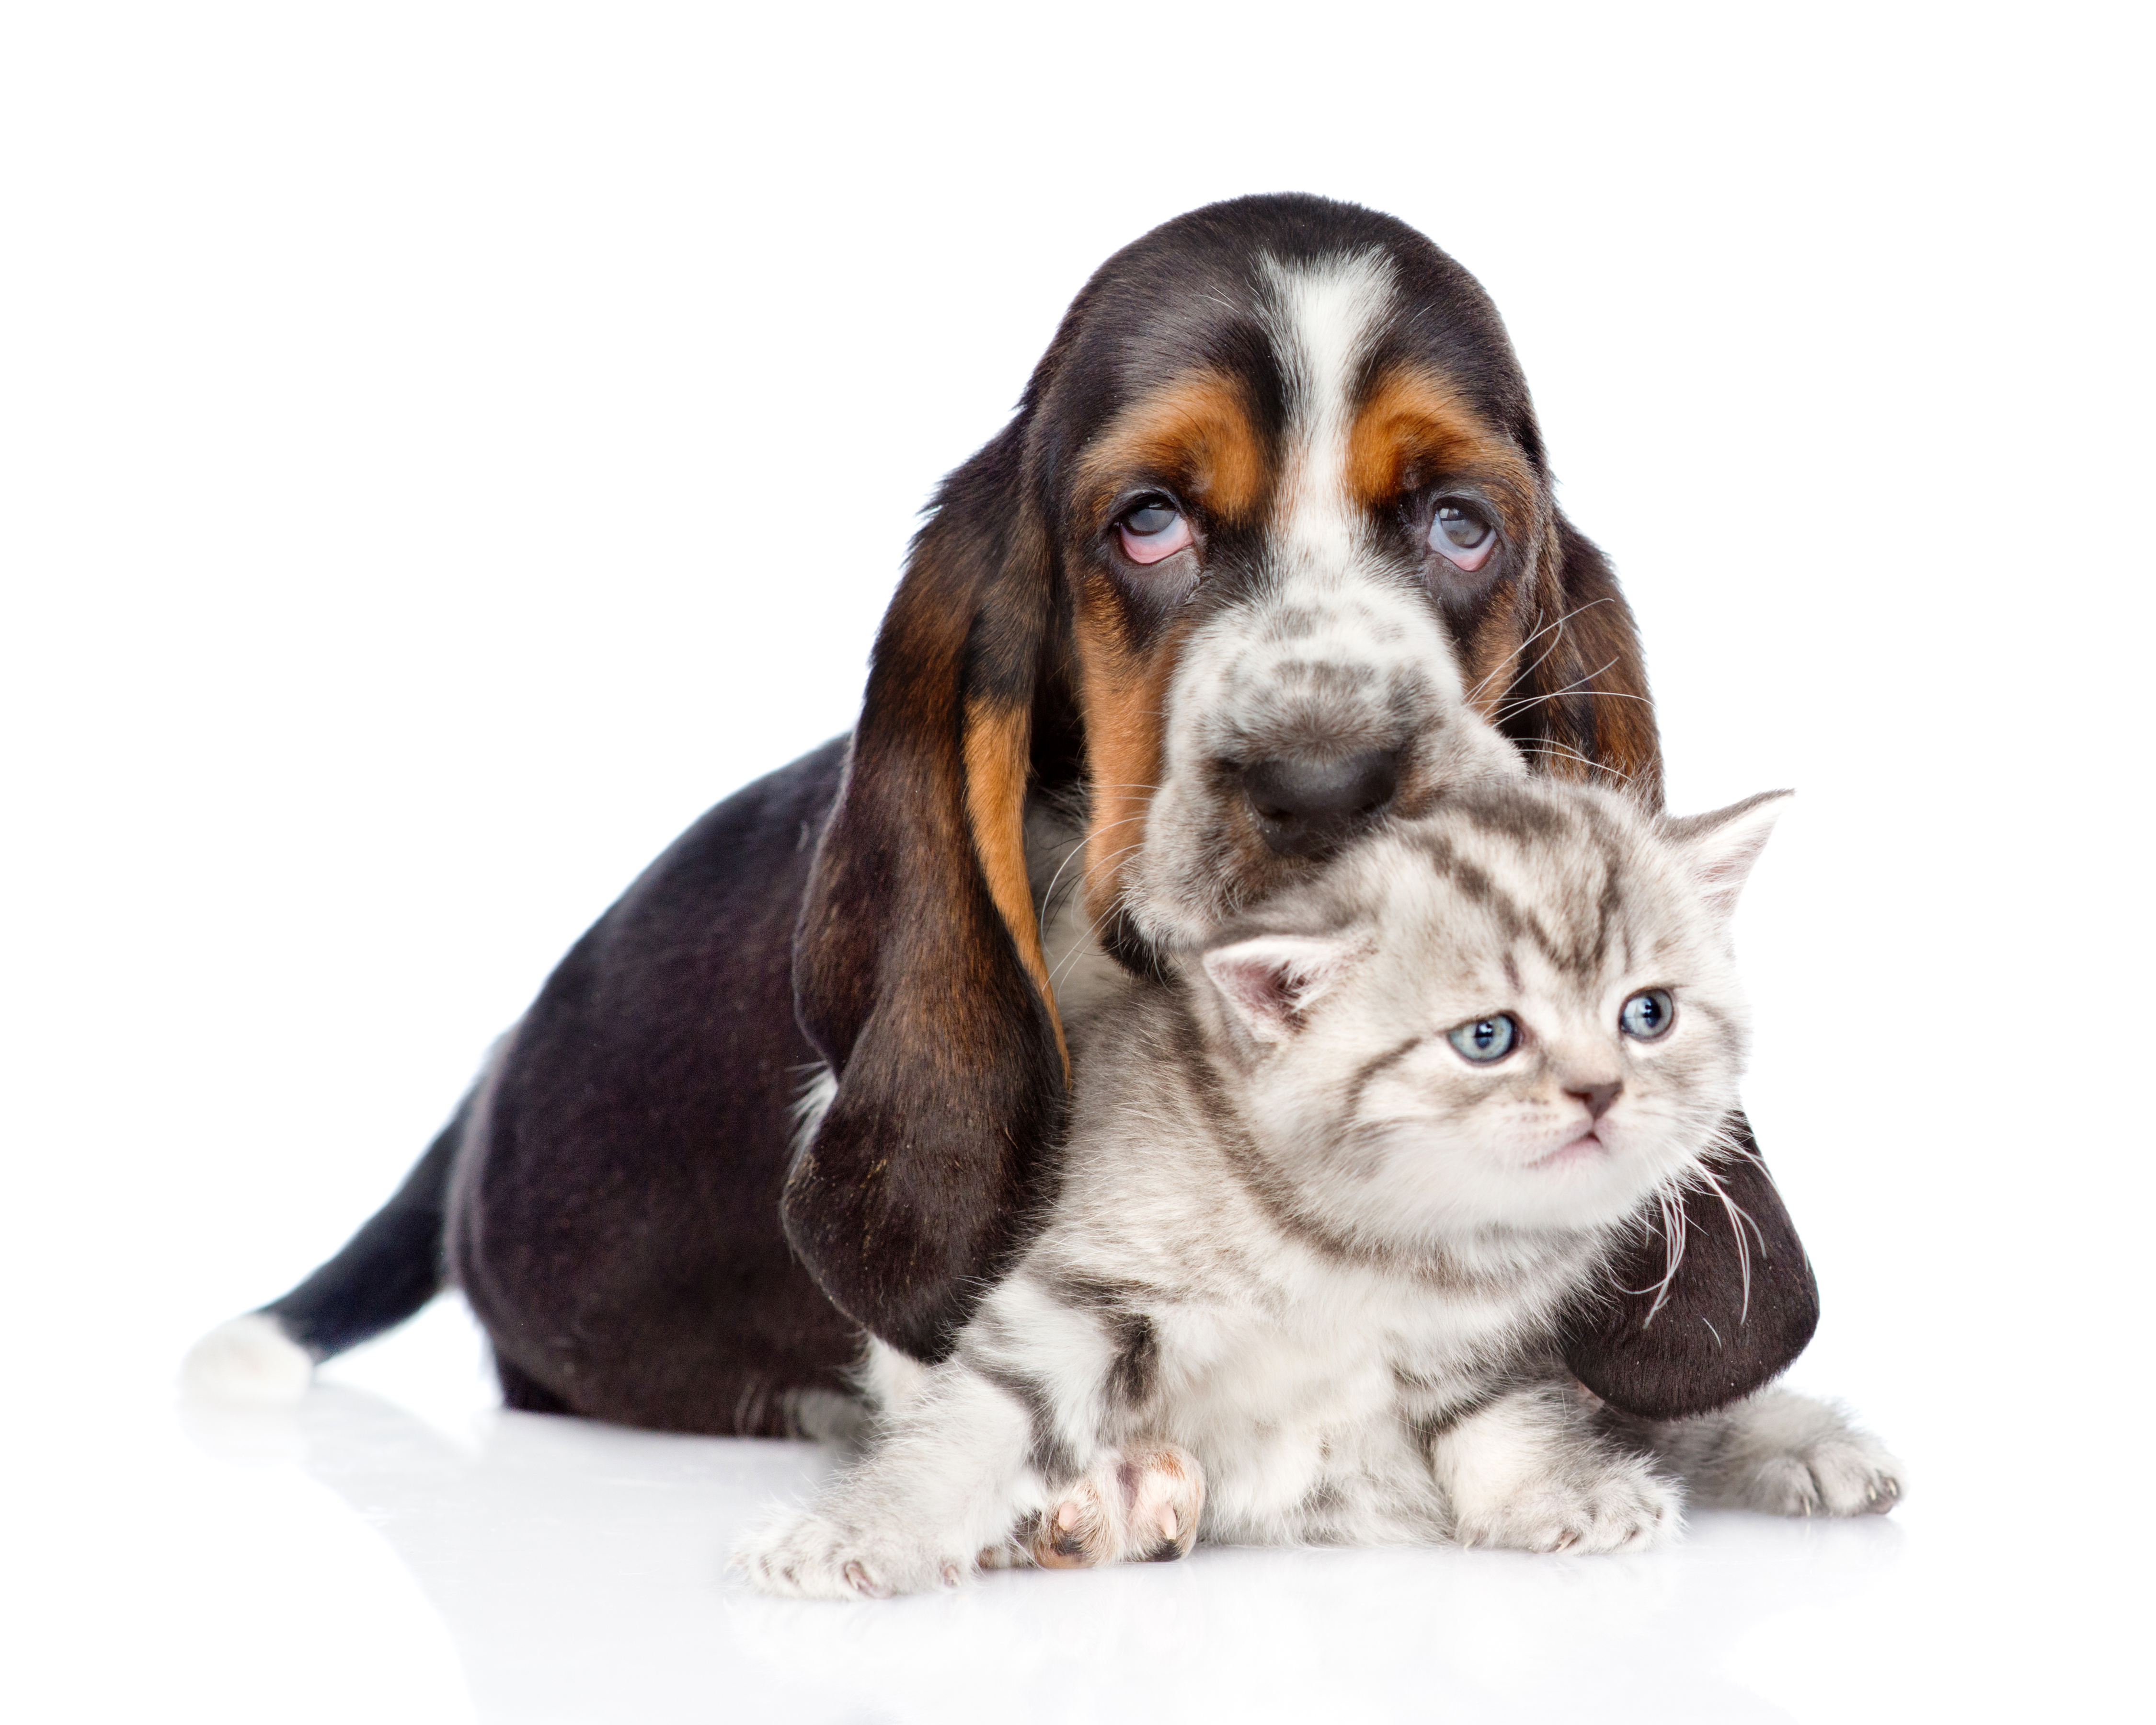 Animal Basset Hound Dog Kitten 4500x3600